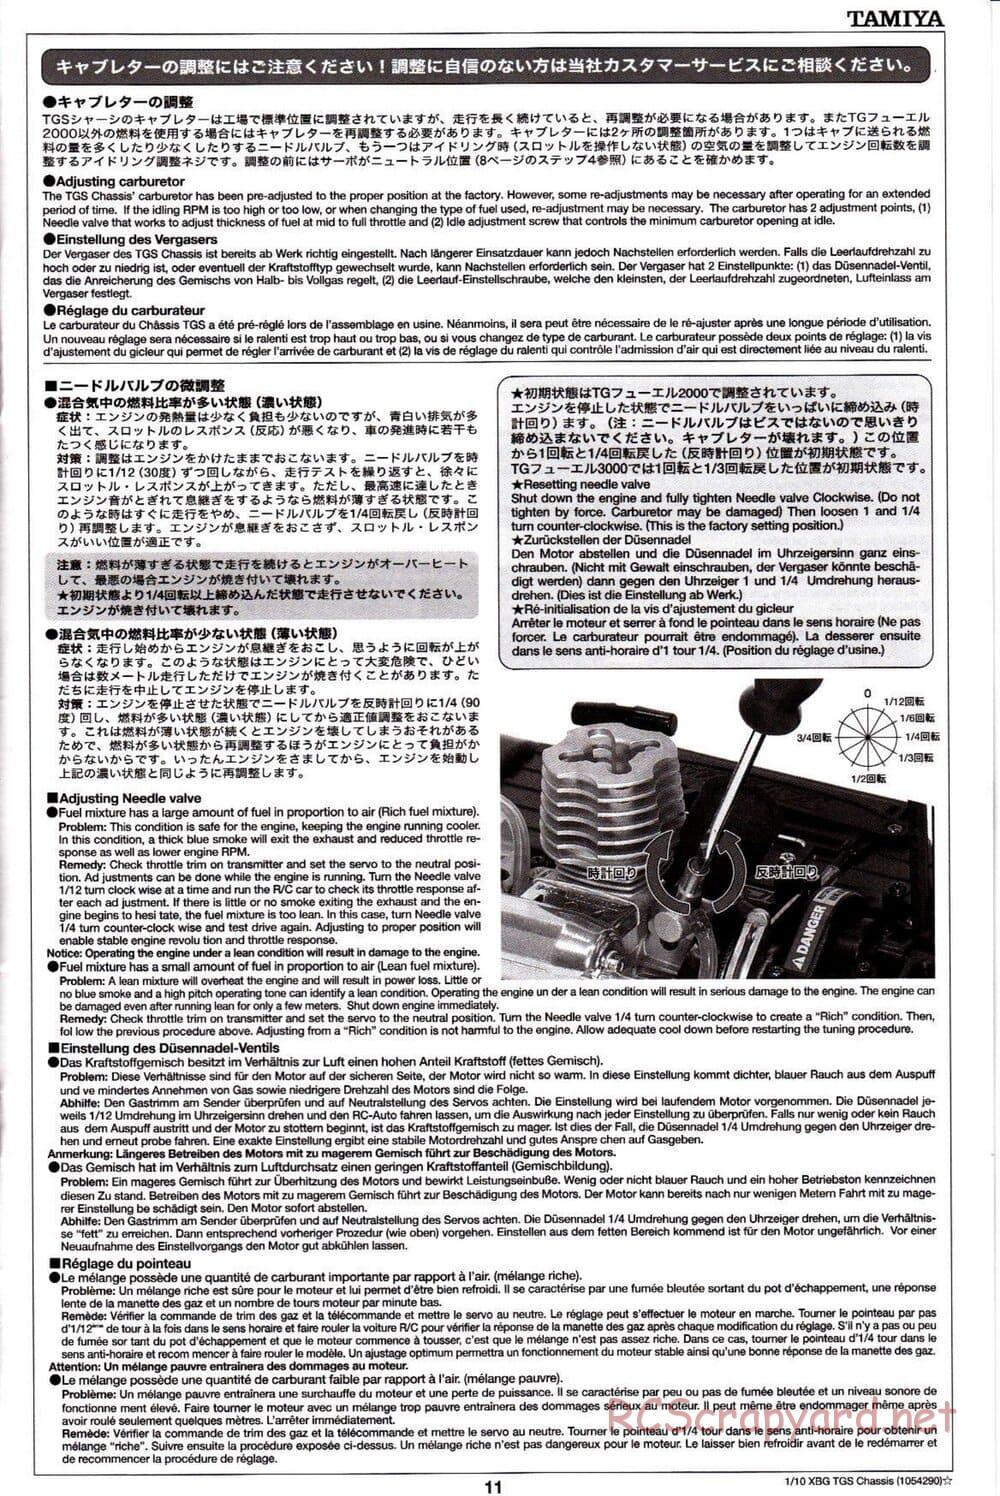 Tamiya - TGS Chassis - Manual - Page 11